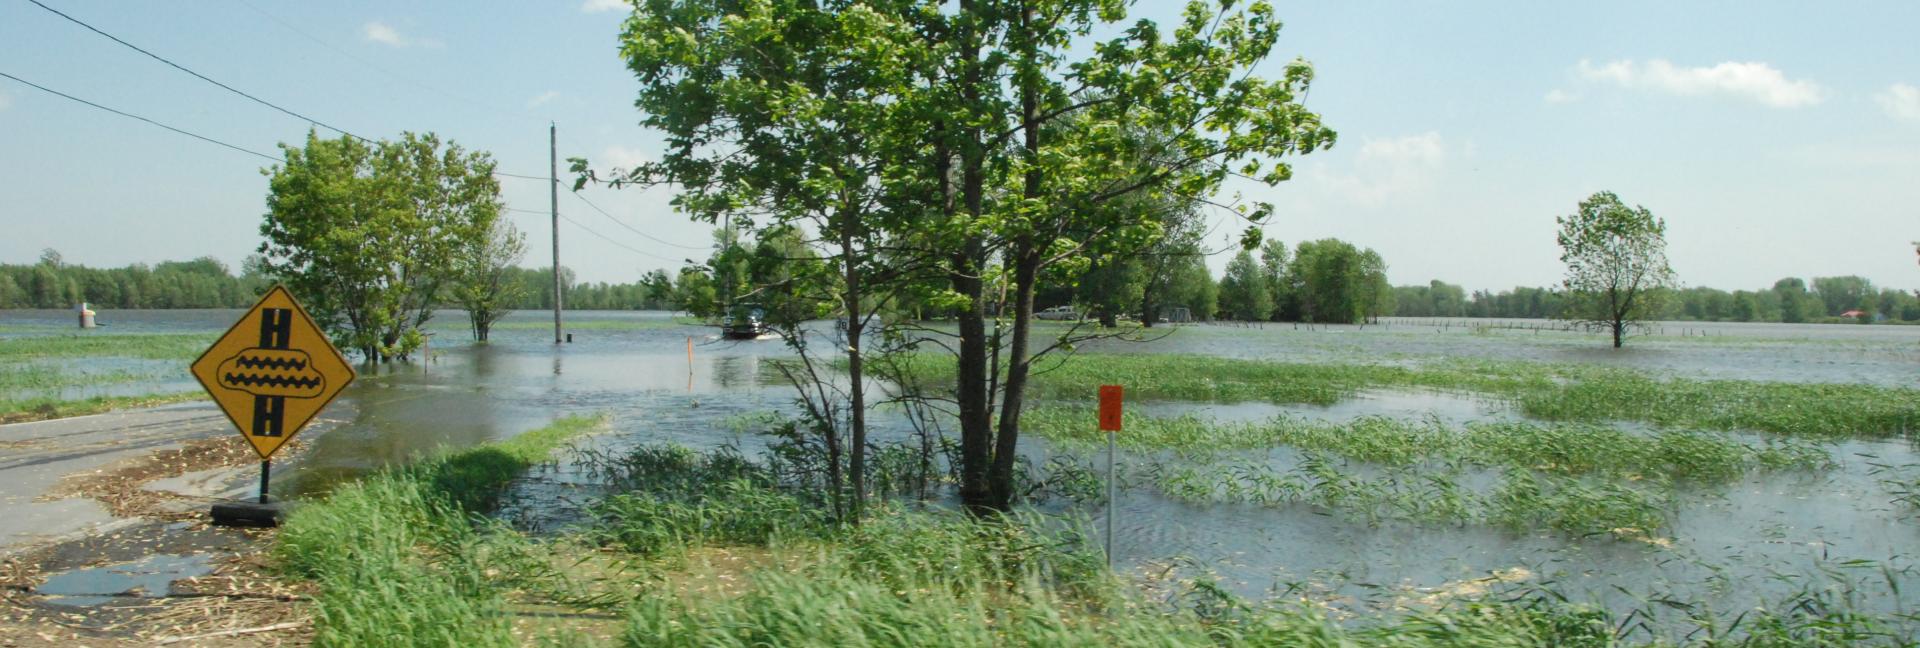 lake champlain floodplain management